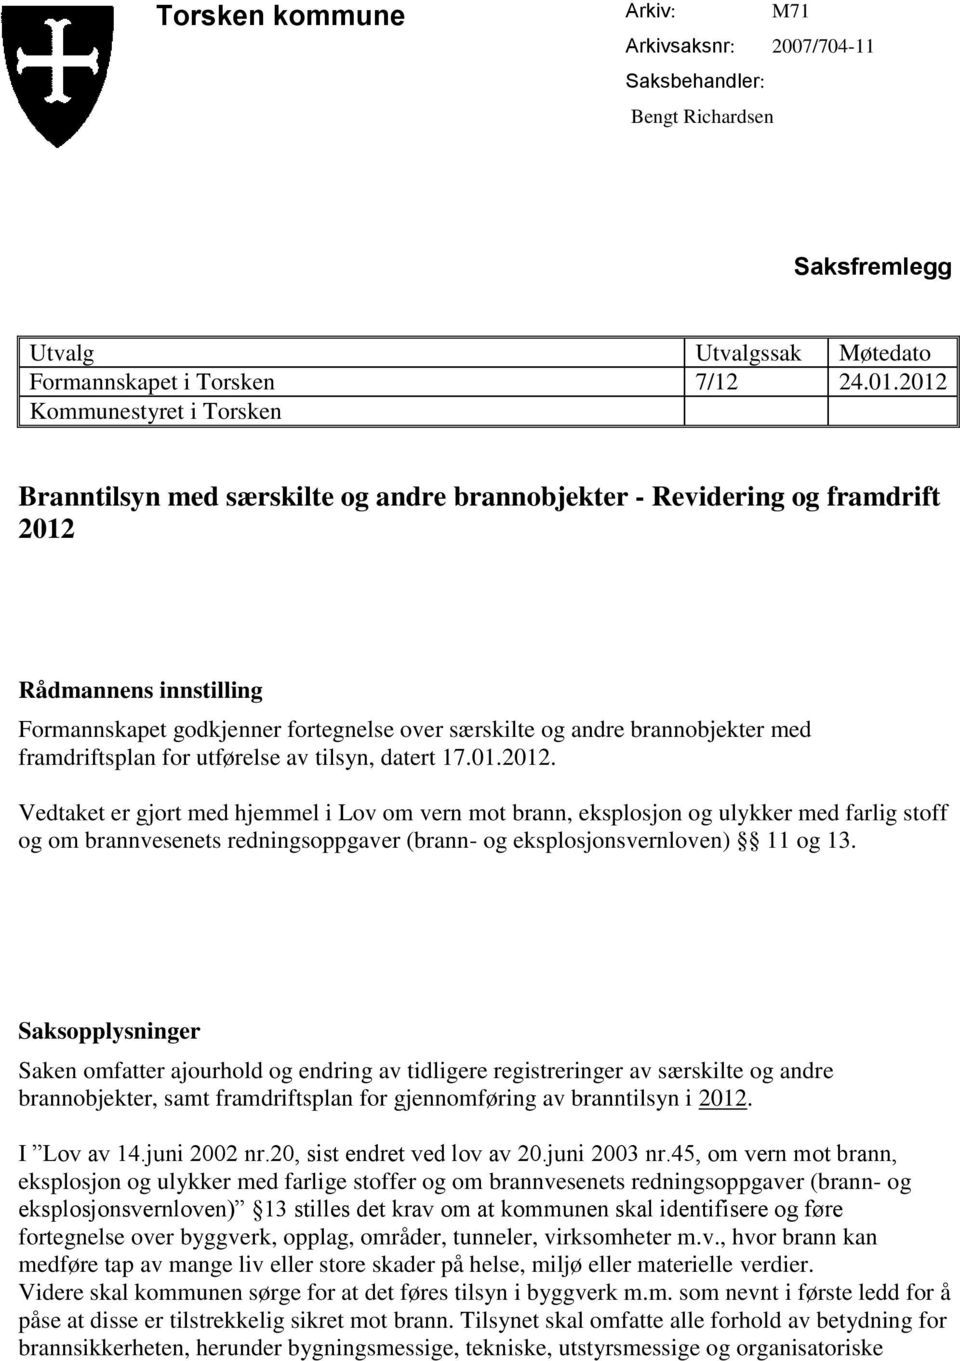 brannobjekter med framdriftsplan for utførelse av tilsyn, datert 17.01.2012.